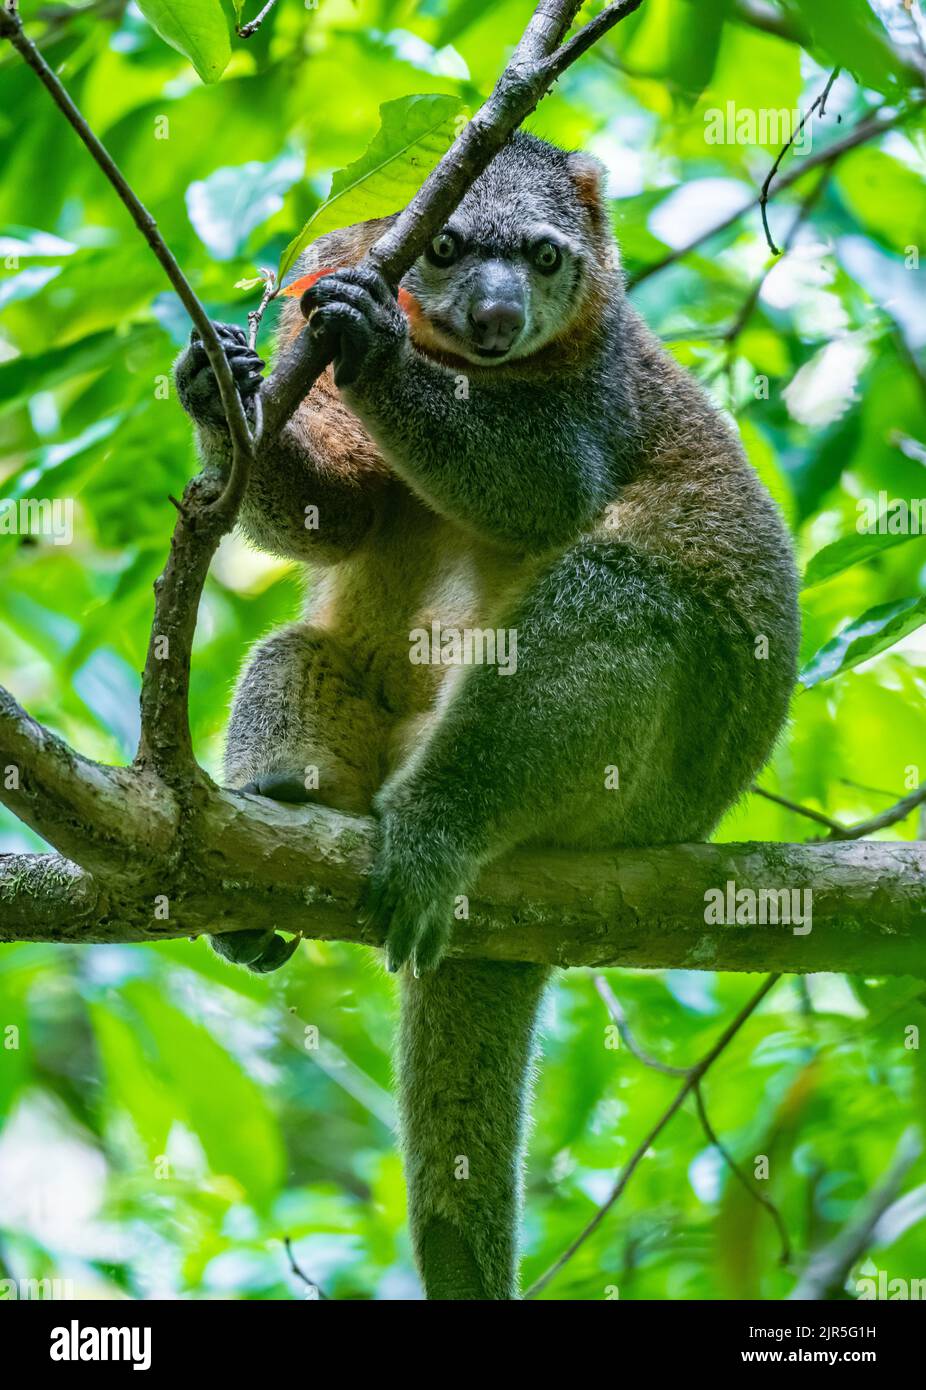 Un cuscus d'ours marsupial rare et endémique (Ailurops ursinus) sur un arbre dans la nature. Parc national de Tangkoko, Sulawesi, Indonésie. Banque D'Images